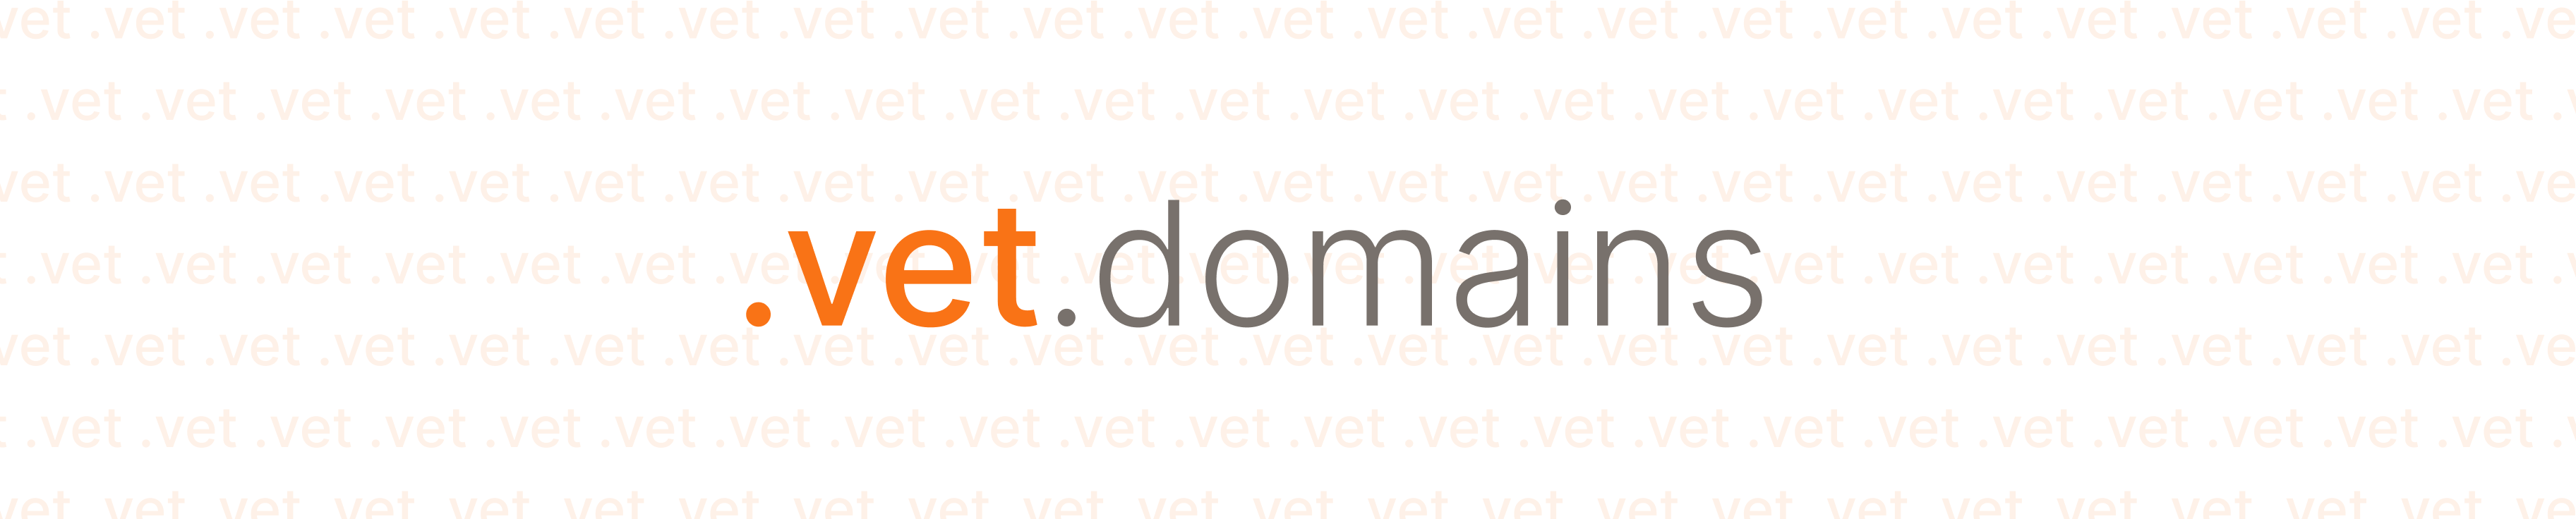 vet.domains